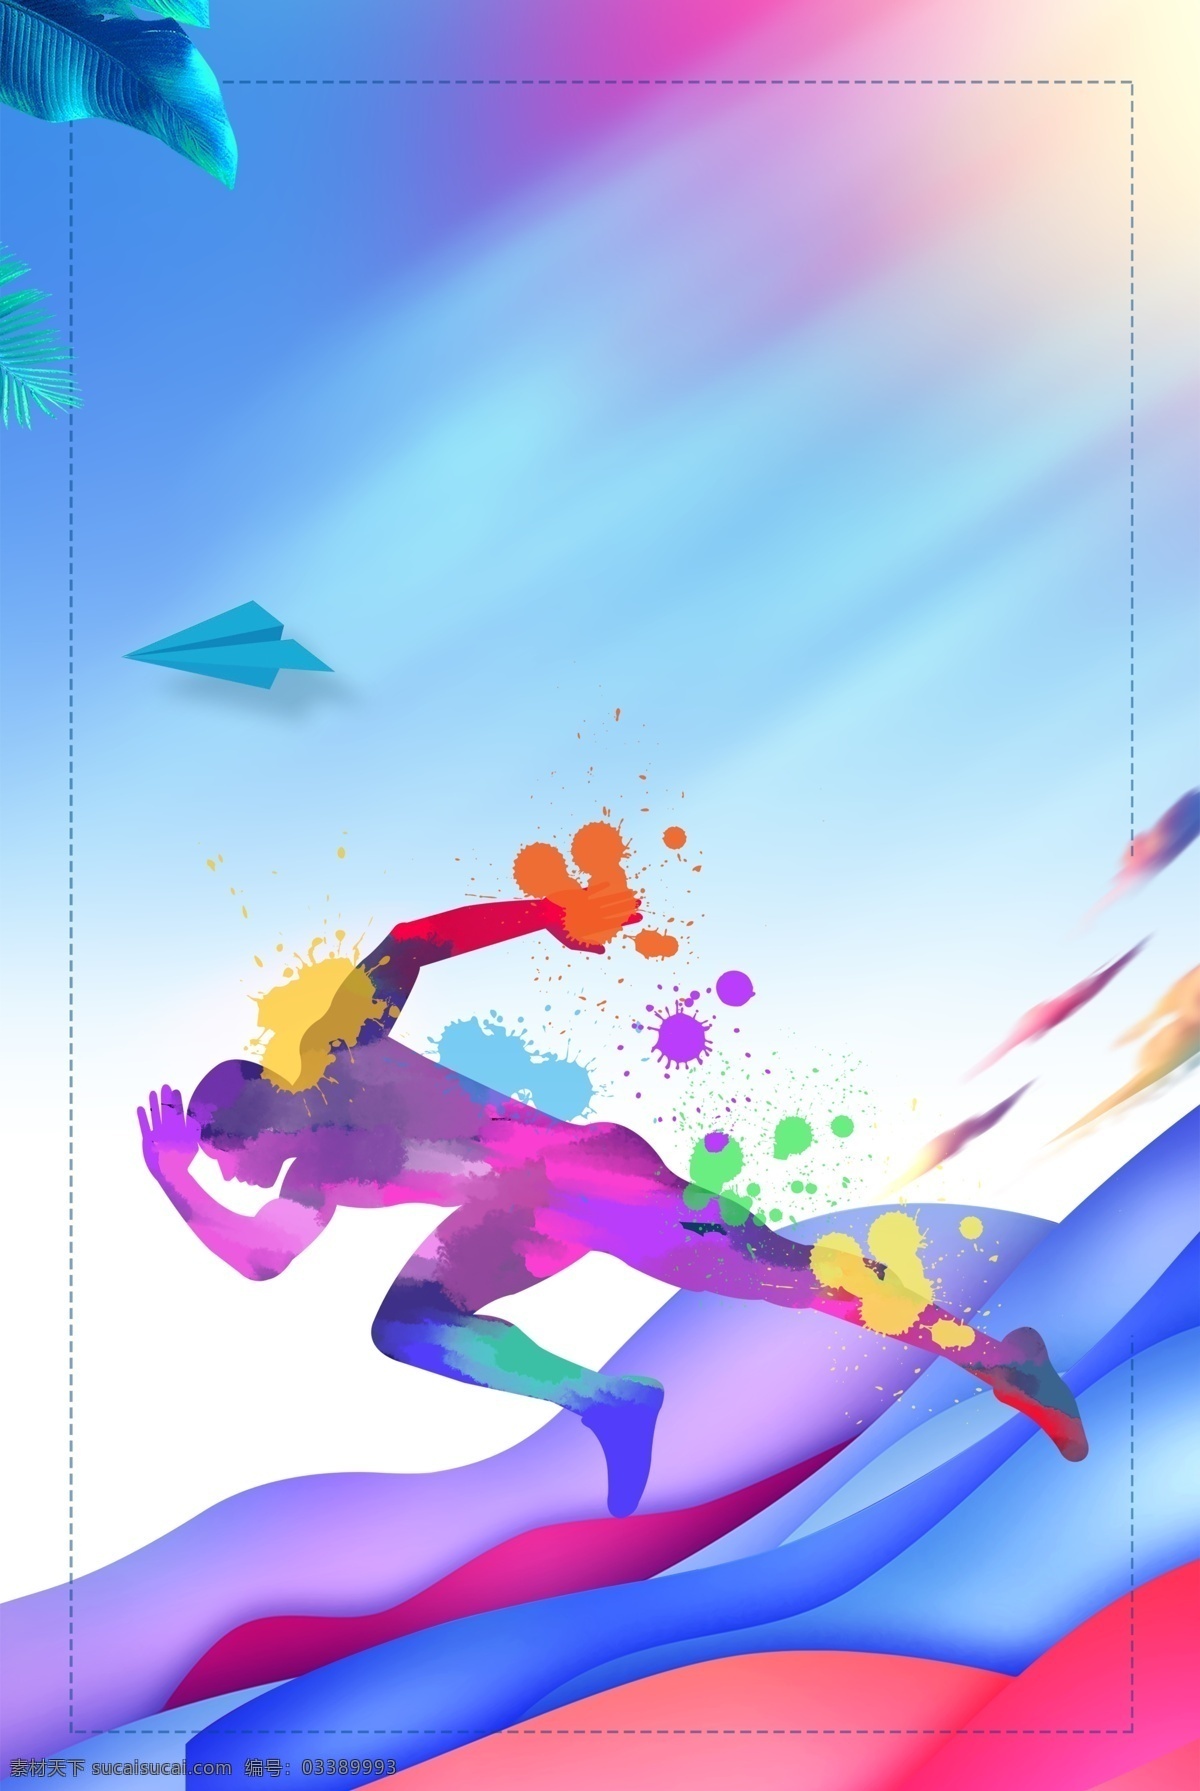 奔跑 运动 剪影 背景 海报 跑步 体育 奥运会 赛跑 冲刺